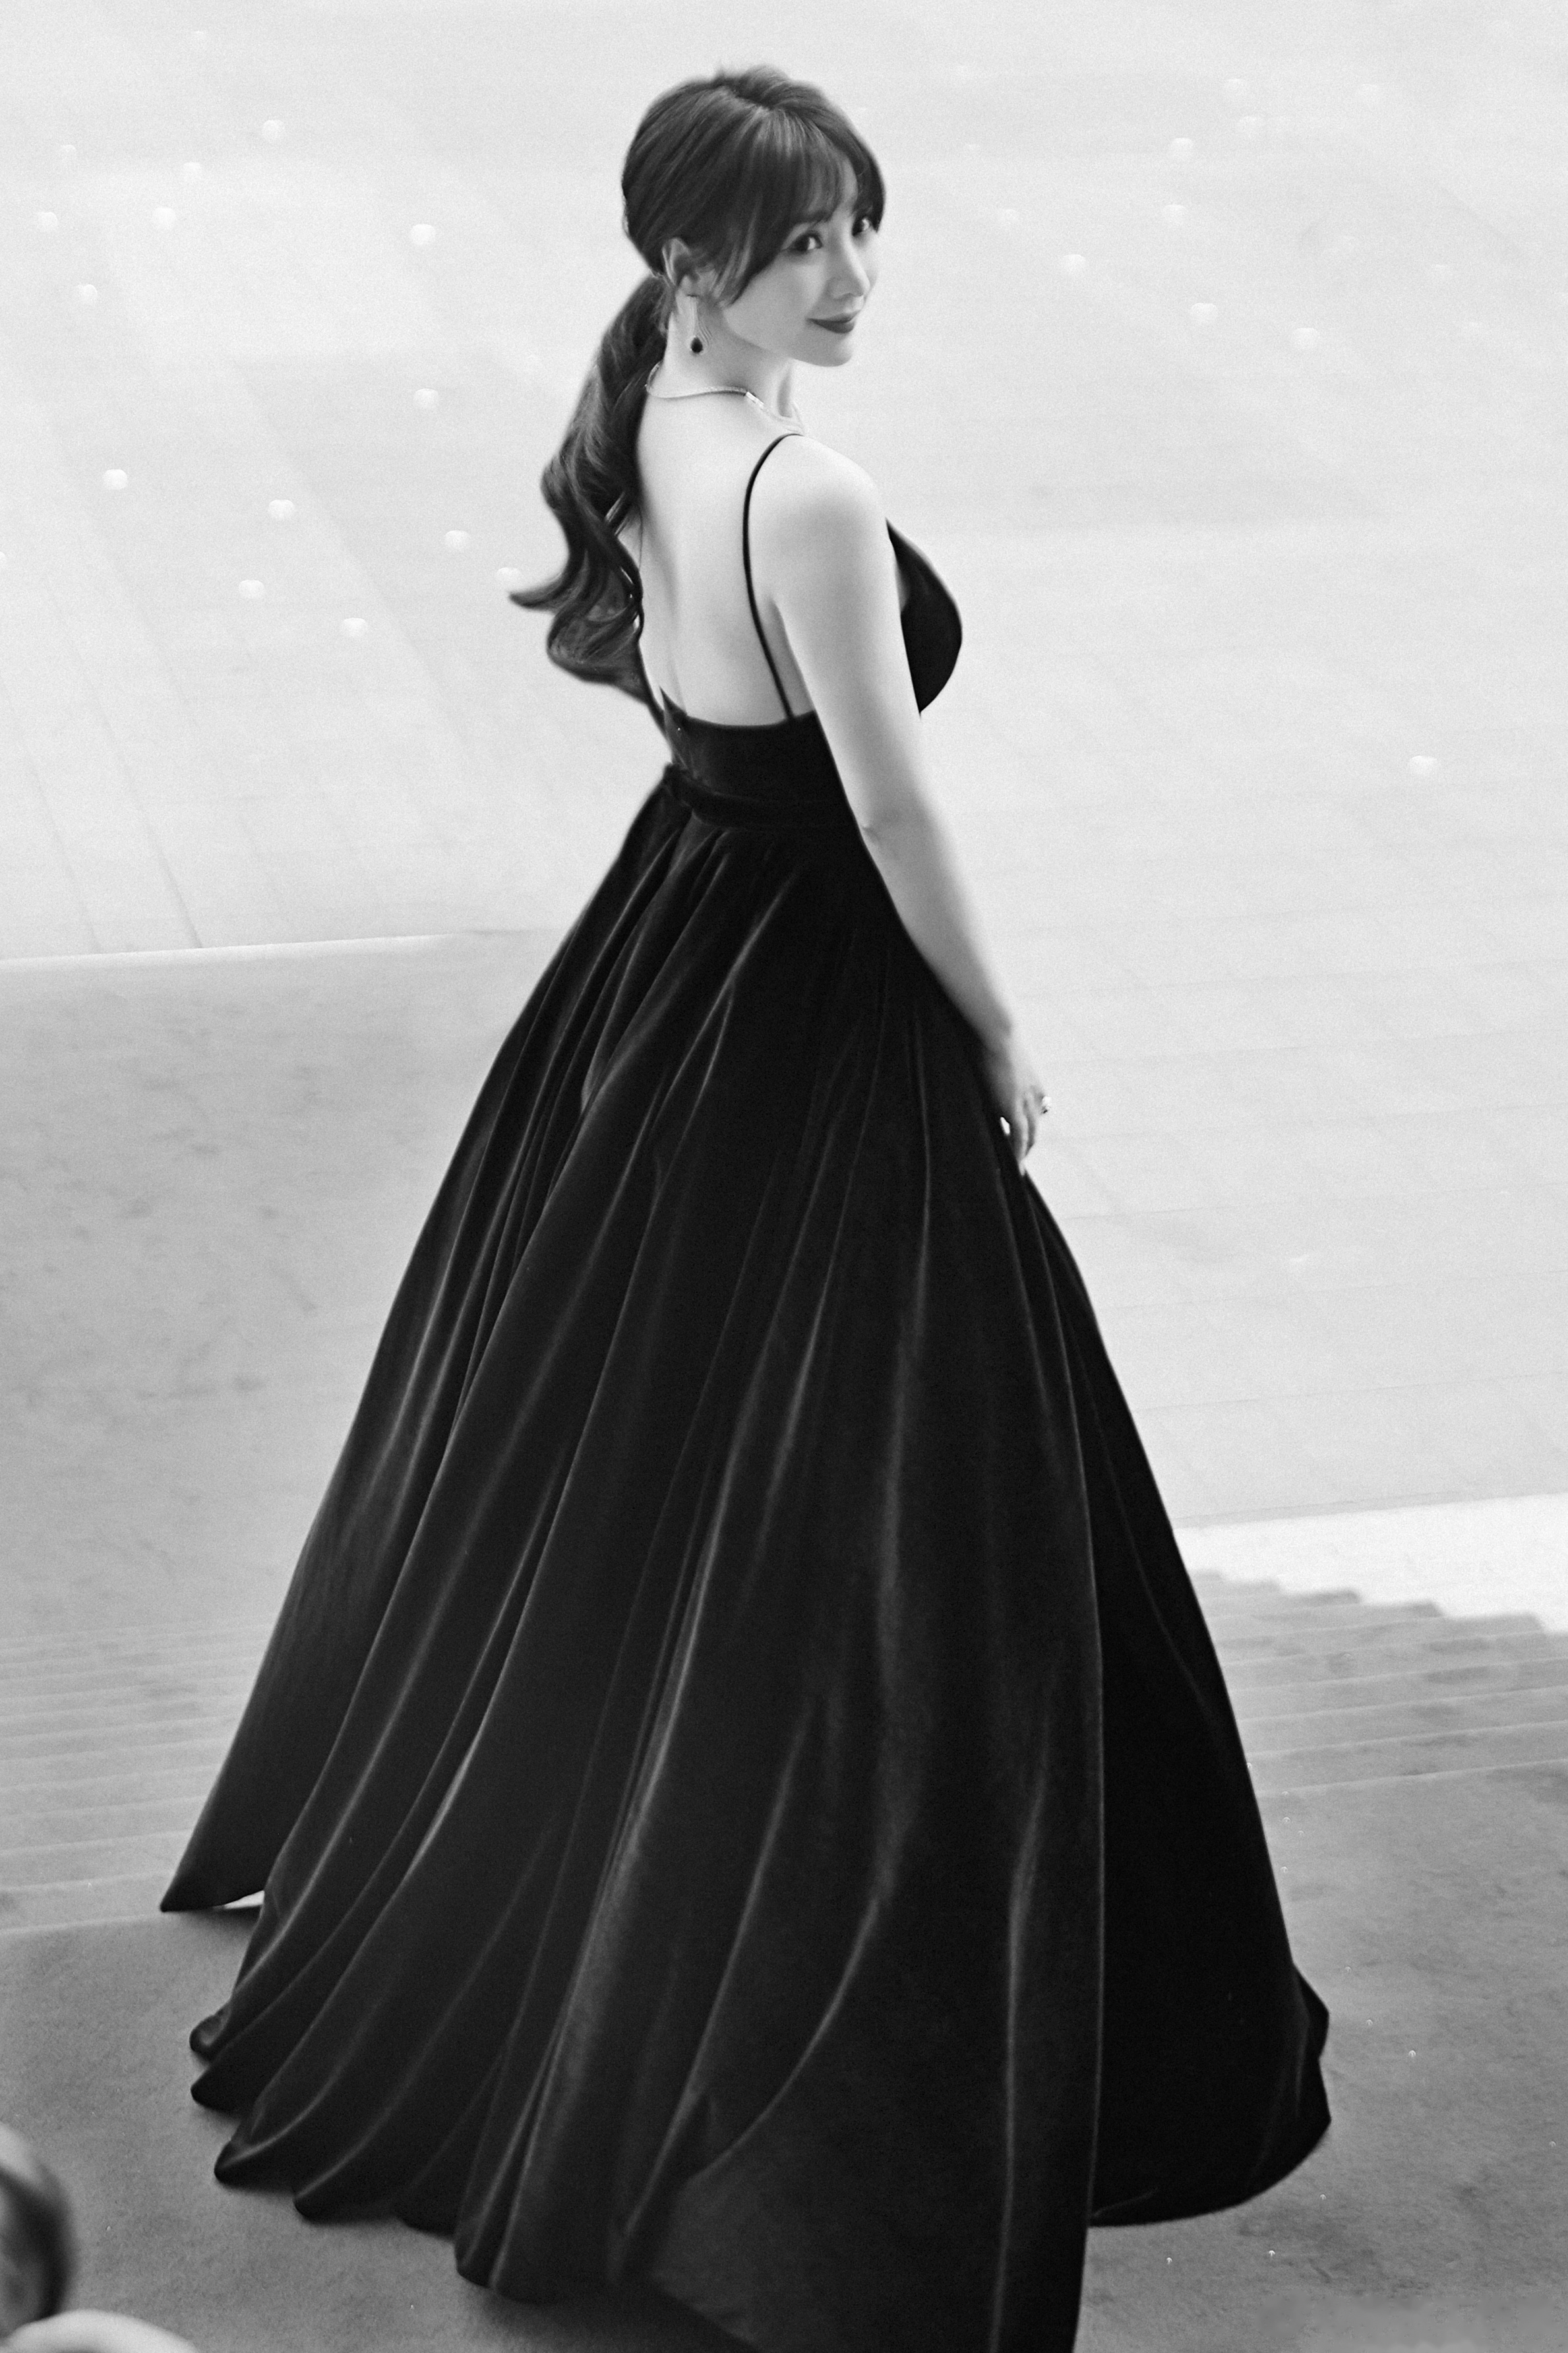 柳岩红毯造型放送黑色天鹅绒吊带长裙,优雅神秘,一如柳岩